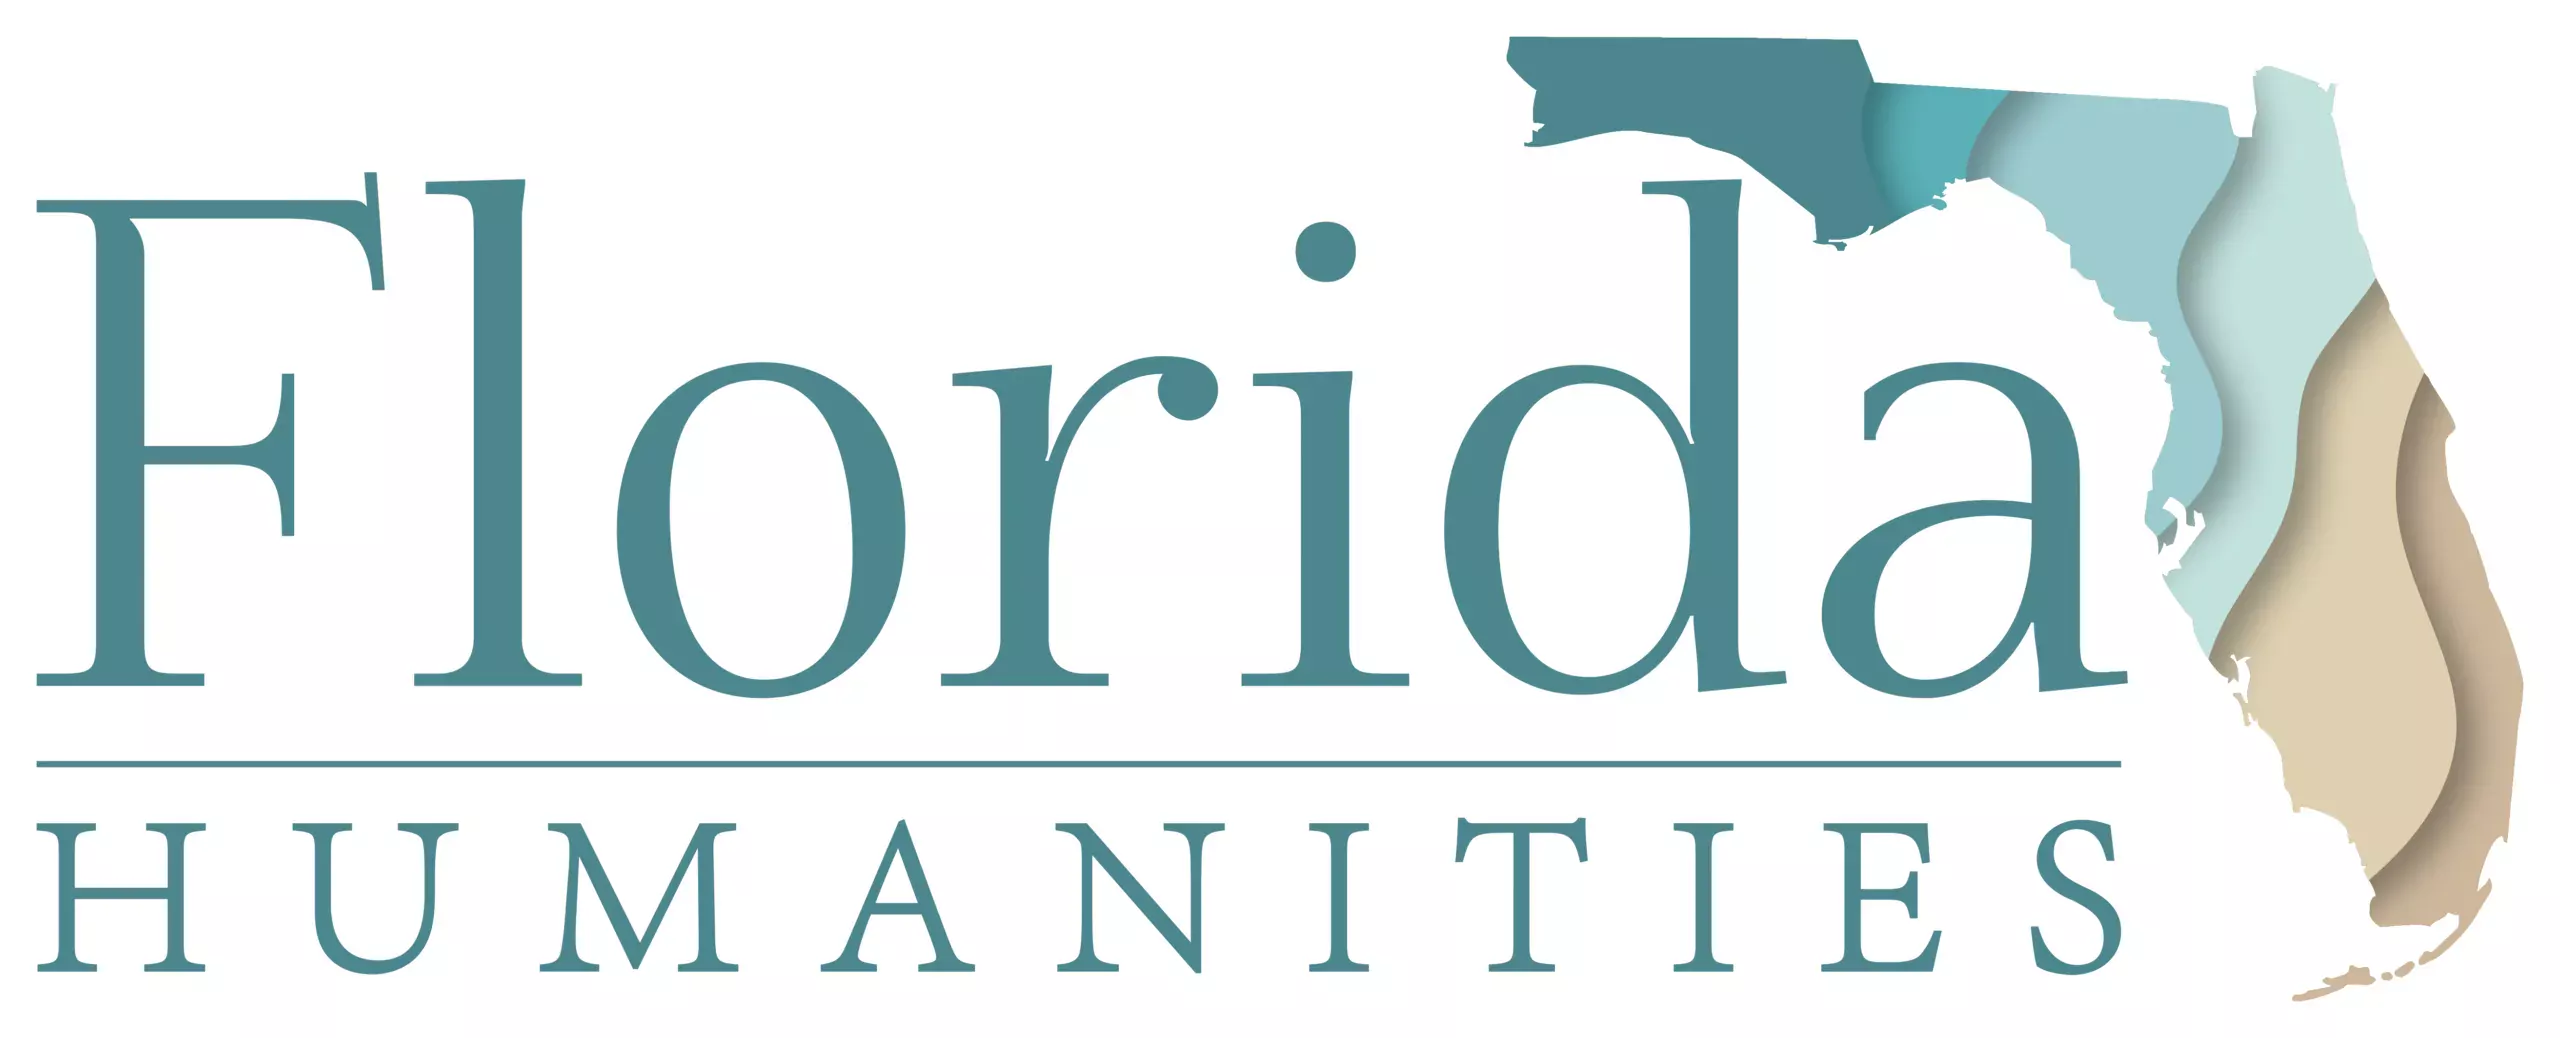 Florida Humanities logo showing state of Florida